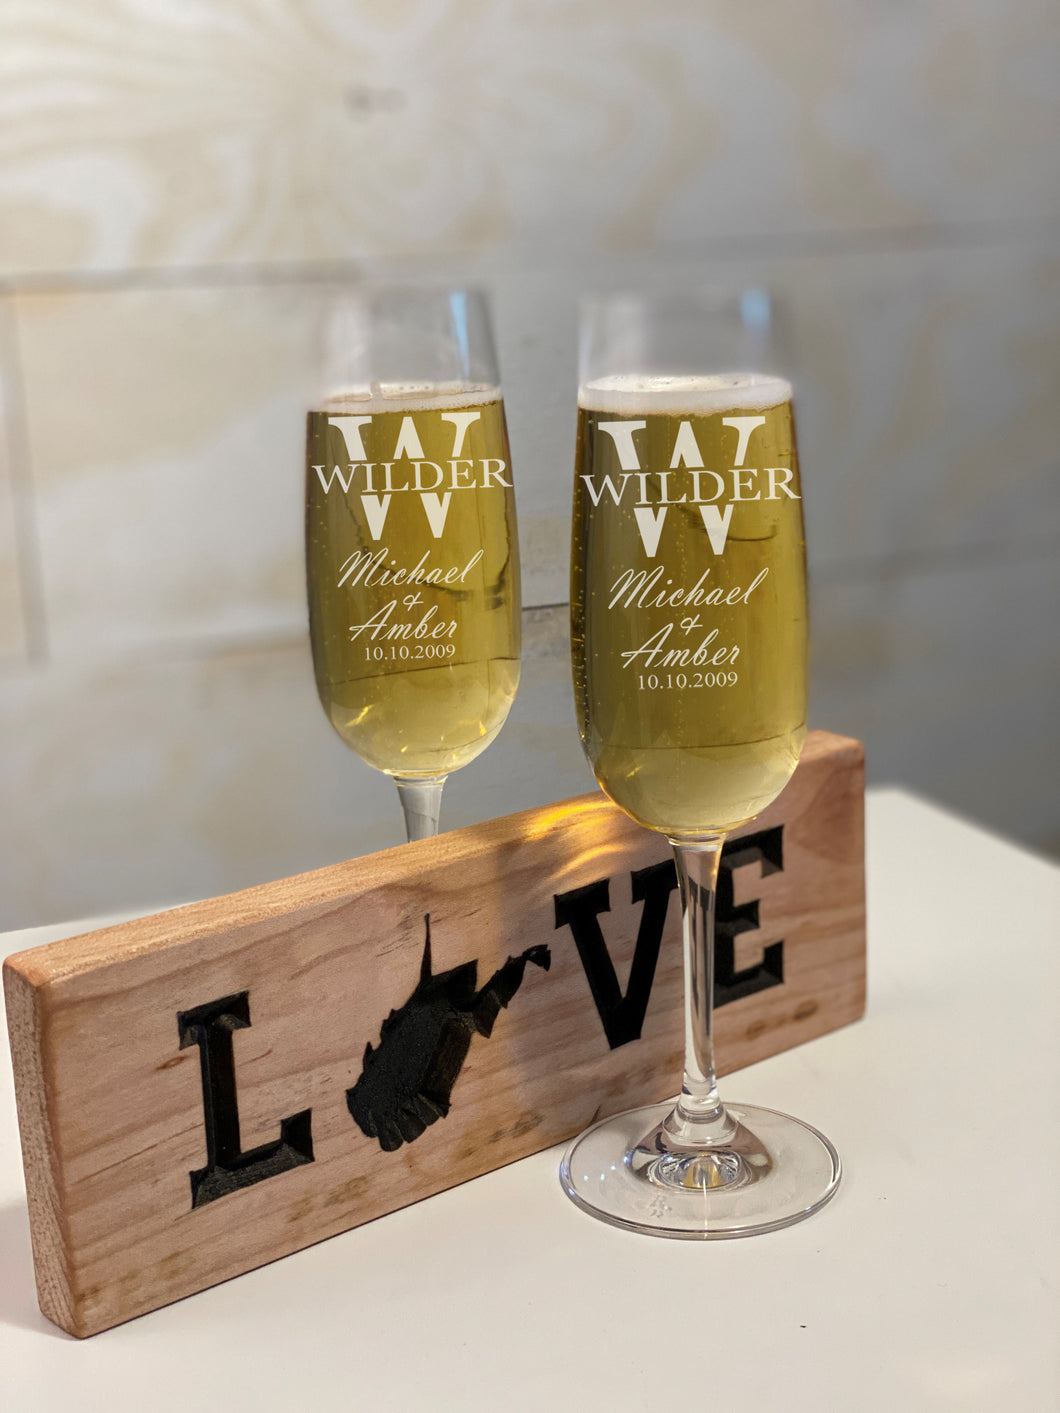 Split Font Engraved Wedding Glass Champagne Flutes Set of 2